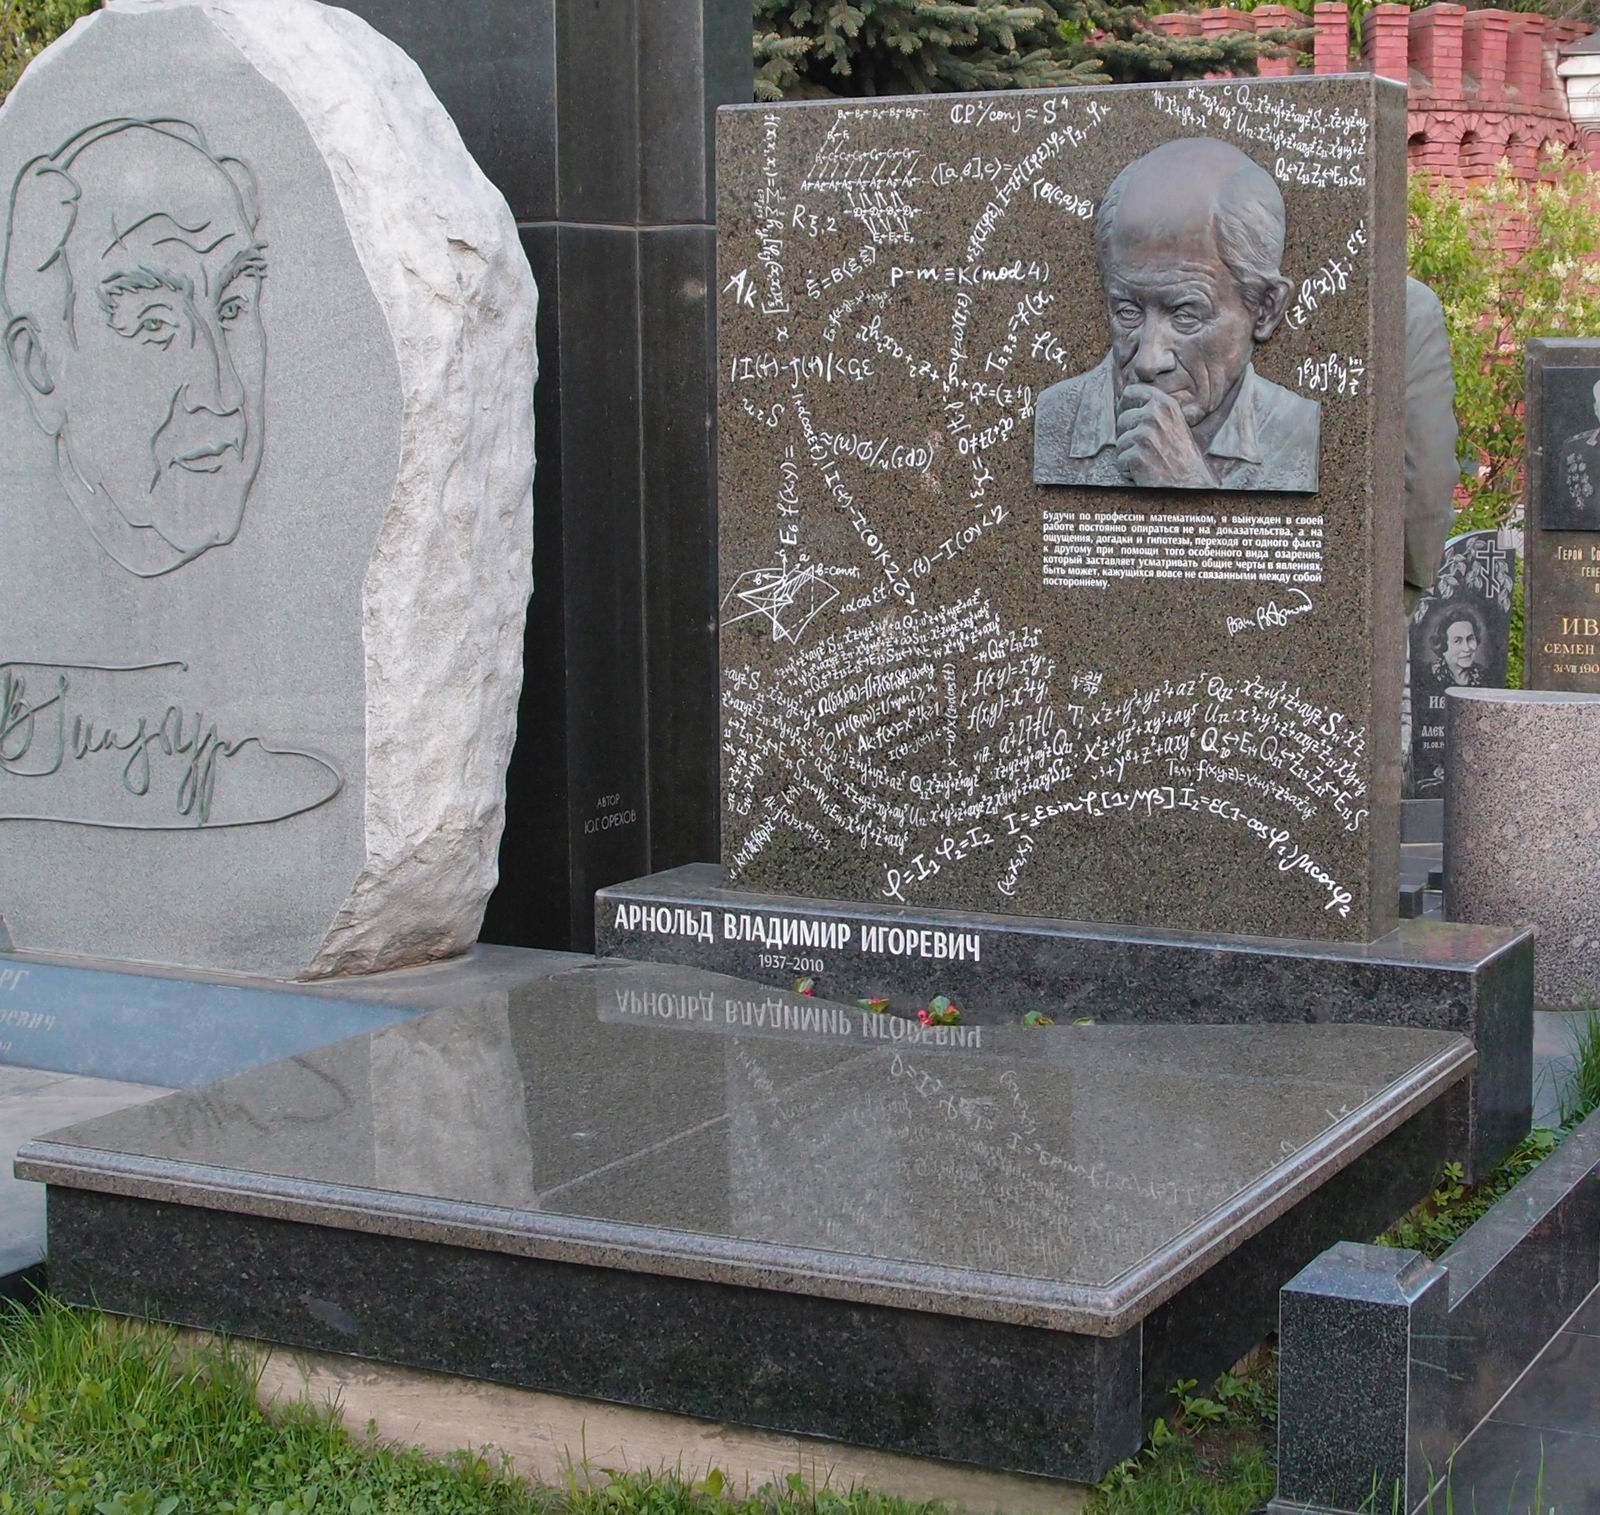 Памятник на могиле Арнольда В.И. (1937-2010), ск. Н.Билык., на Новодевичьем кладбище (11-6-2). Нажмите левую кнопку мыши чтобы увидеть фрагмент памятника.